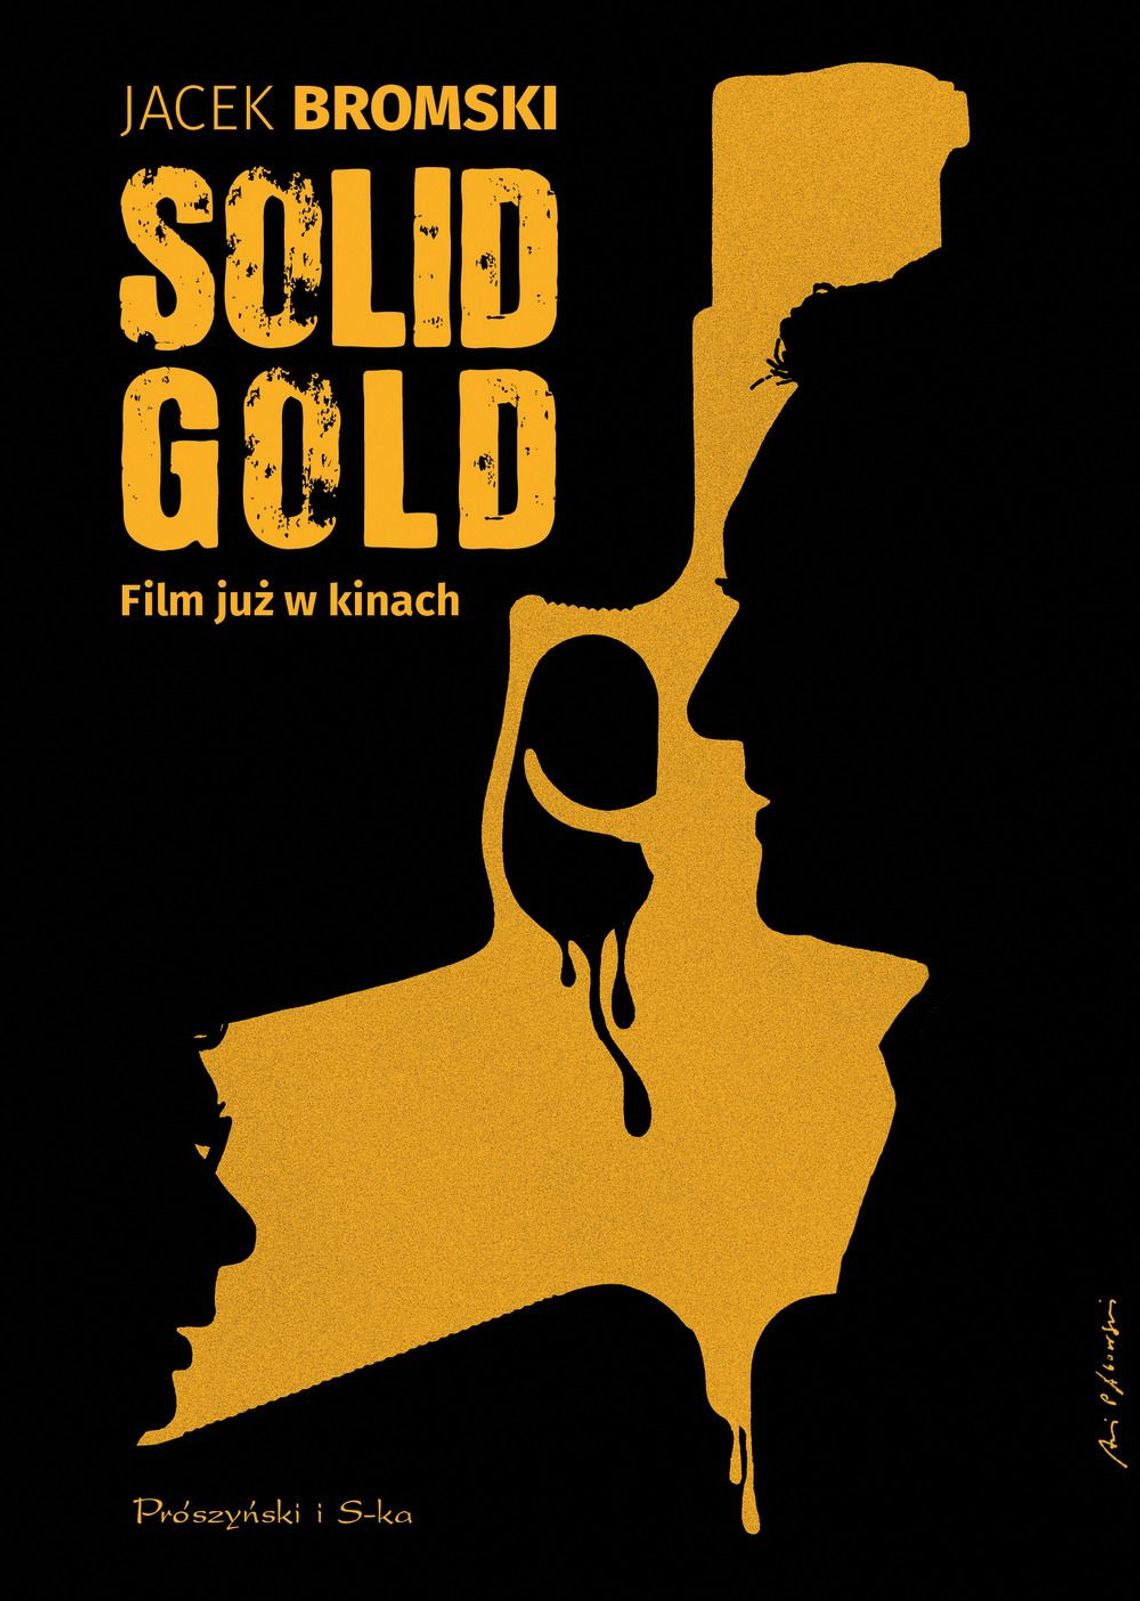 Jacek Bromski "Solid Gold" ; wyd. Prószyński i S-ka